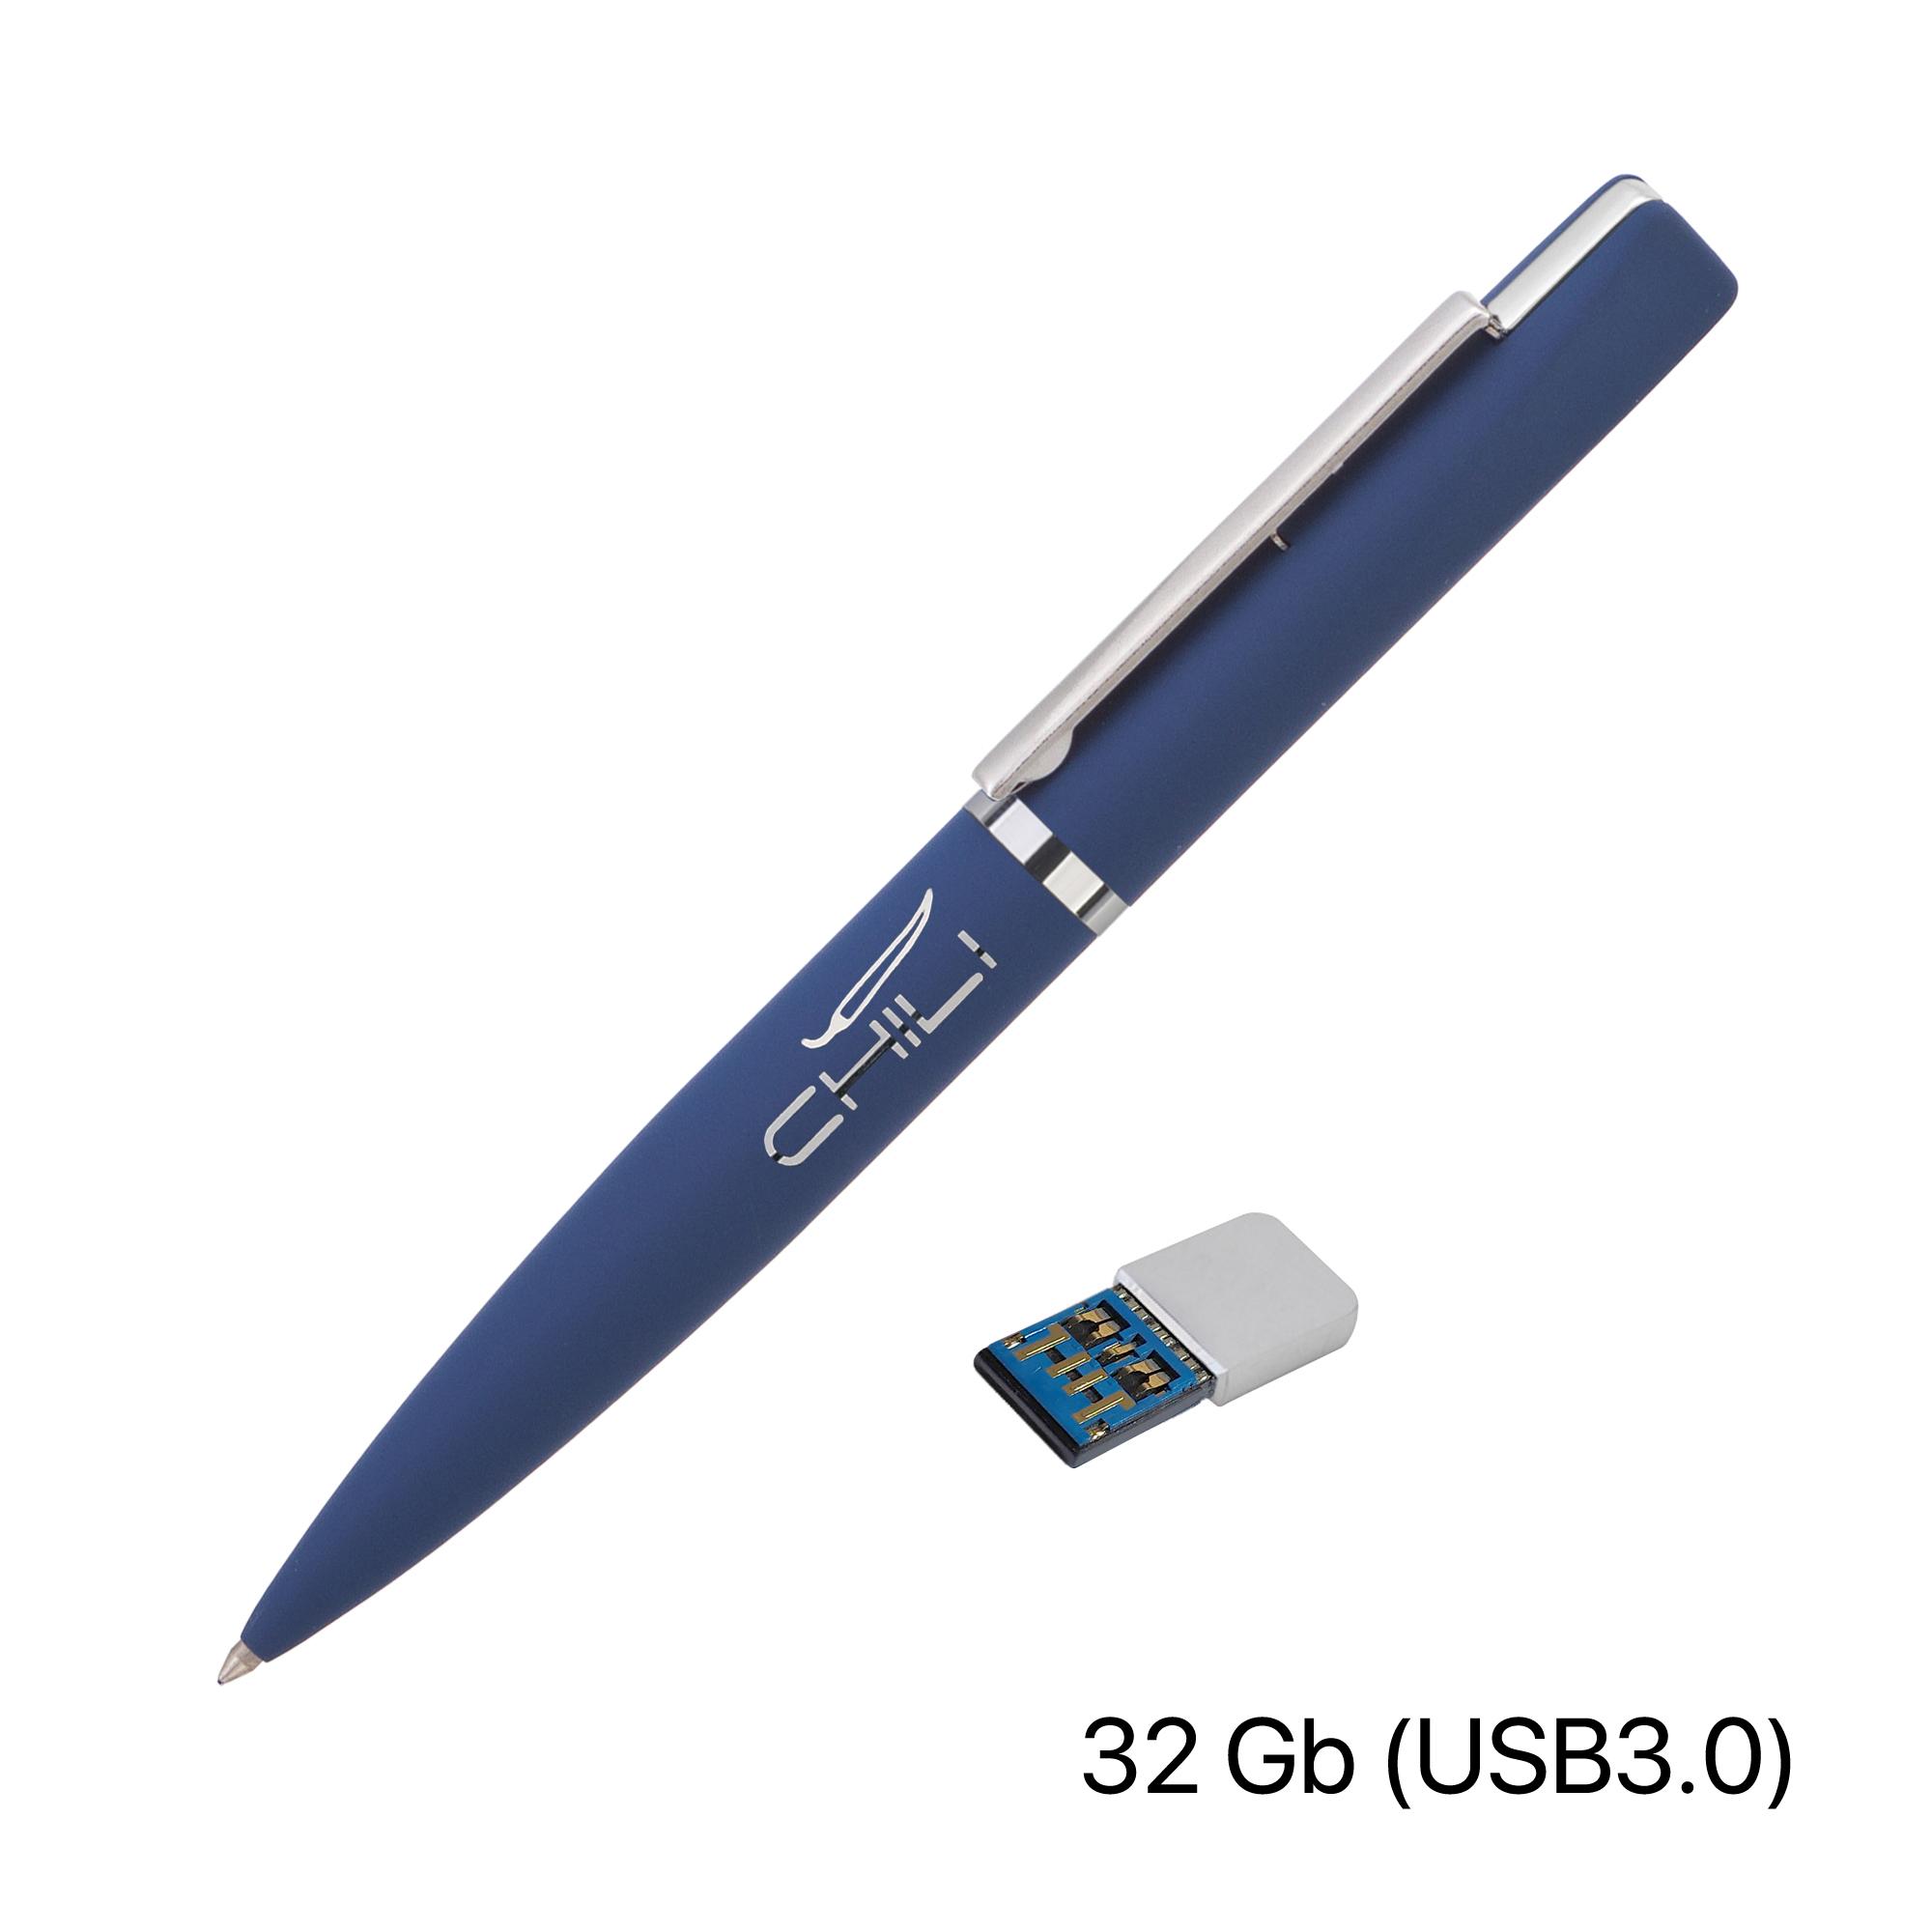 Ручка с флеш-картой USB 8GB «TURNUS M», цвет желтый - купить оптом